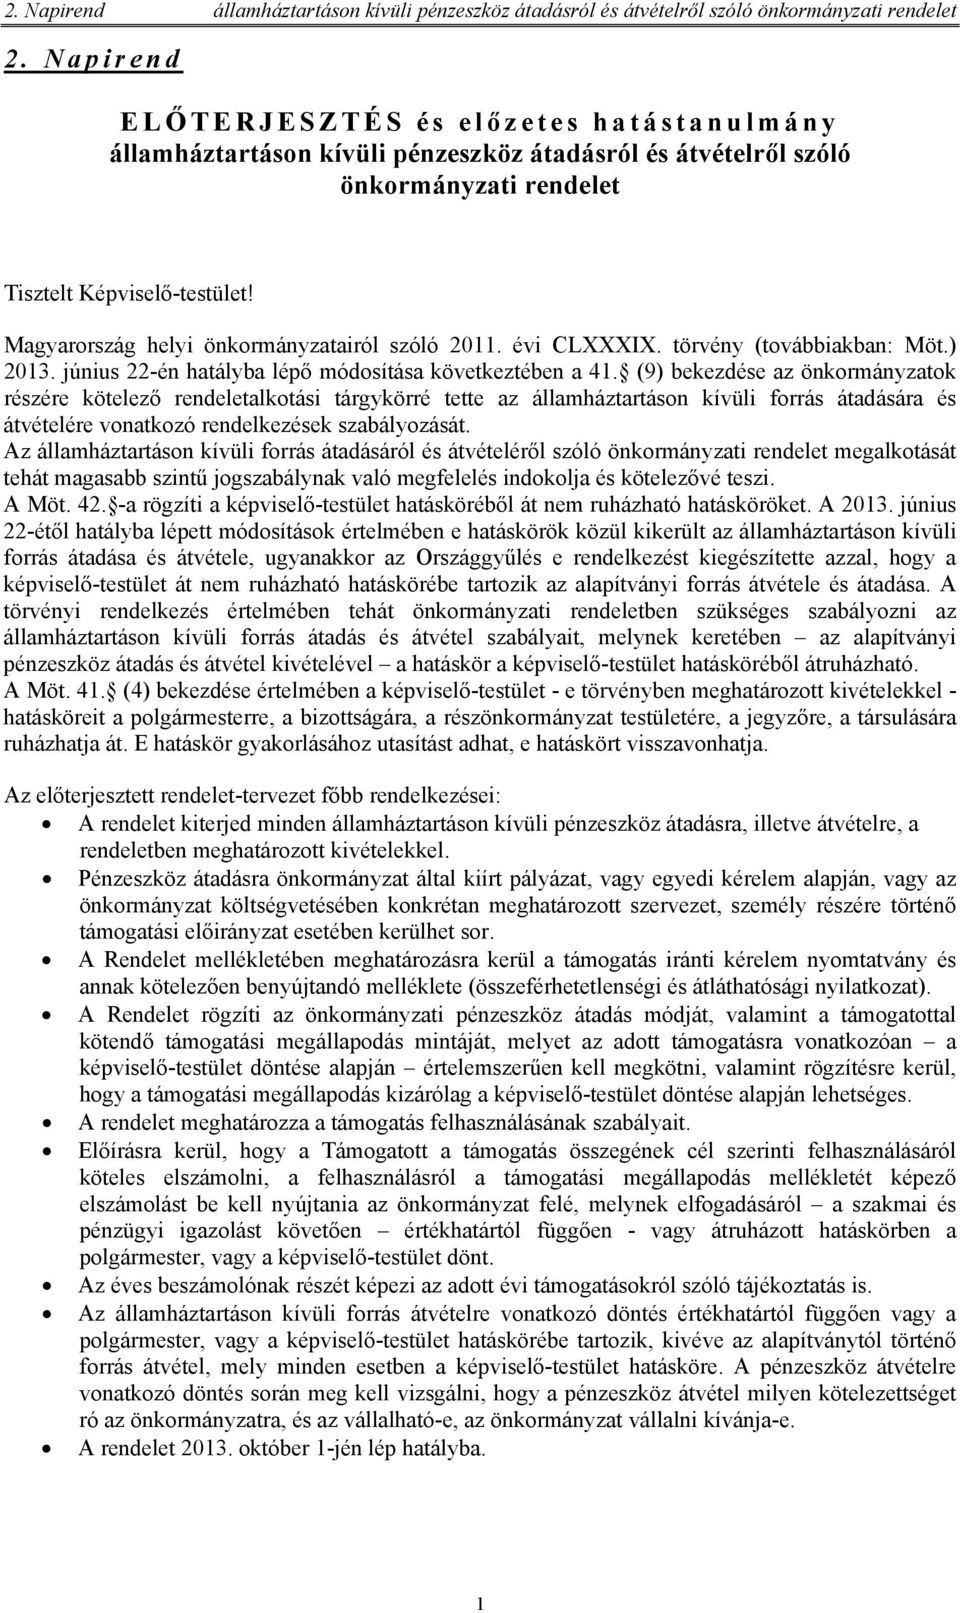 Magyarország helyi önkormányzatairól szóló 2011. évi CLXXXIX. törvény (továbbiakban: Möt.) 2013. június 22-én hatályba lépő módosítása következtében a 41.